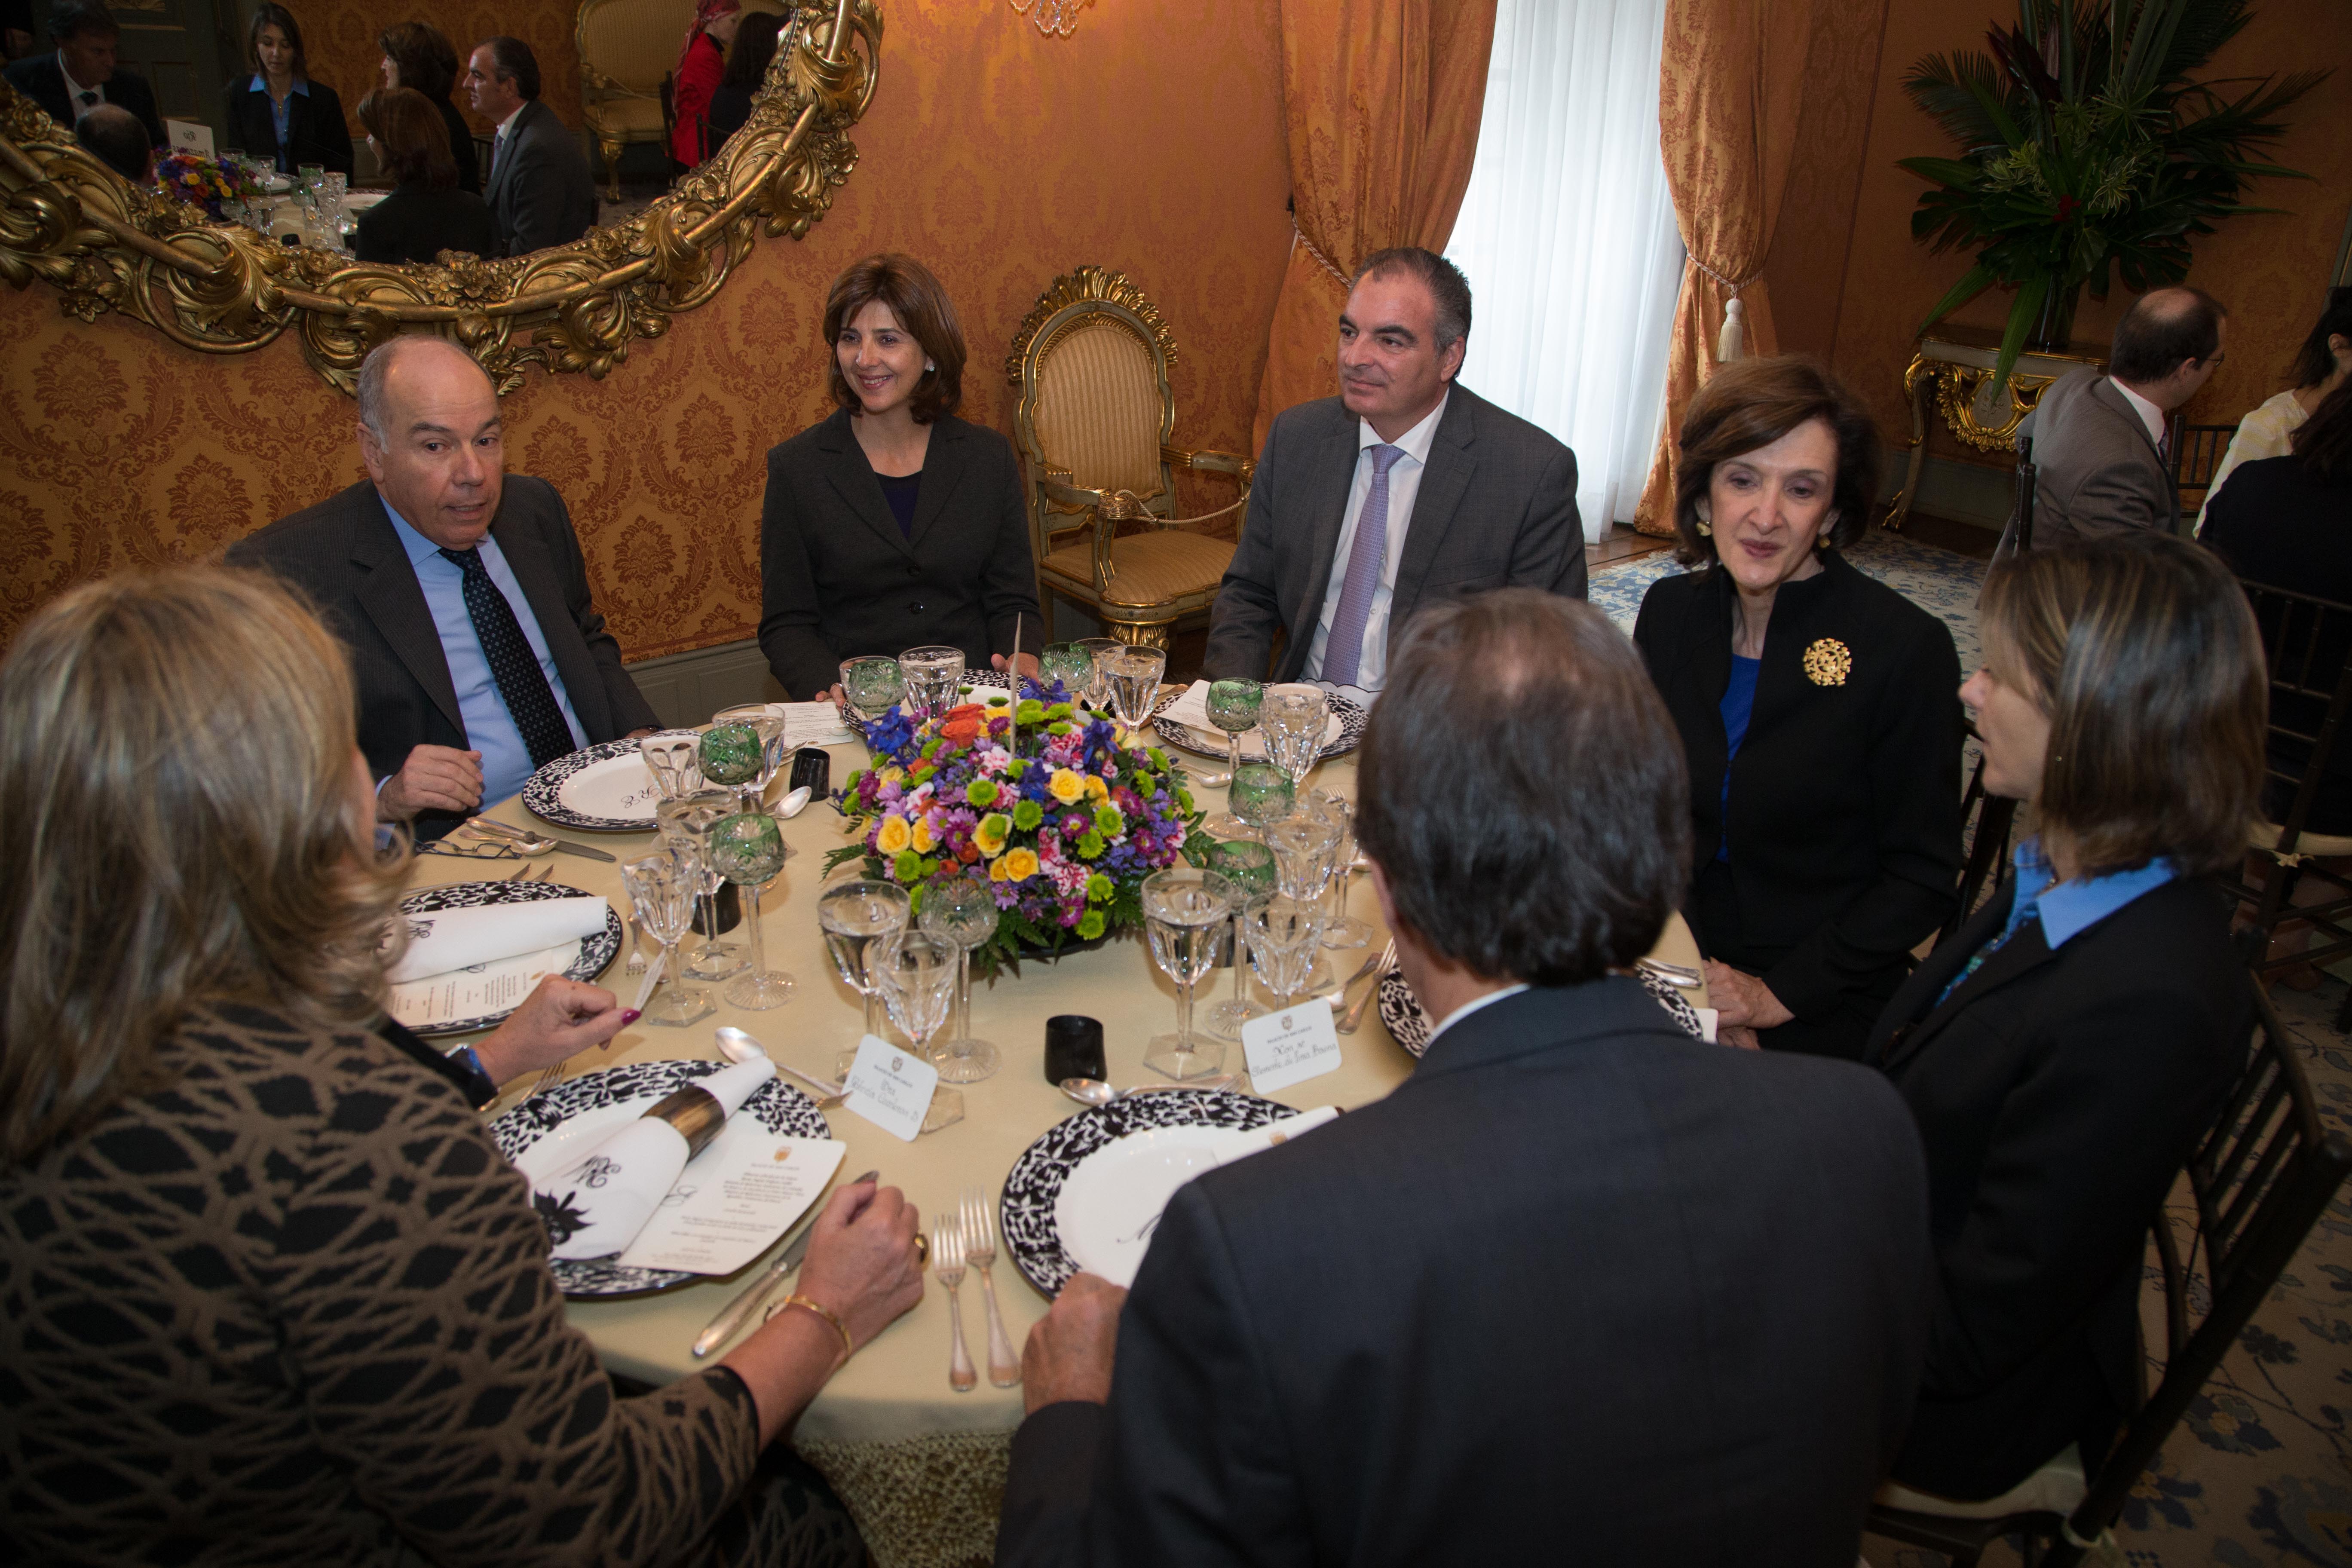  La Ministra de Relaciones Exteriores María Ángela Holguín ofreció un almuerzo en honor a su homólogo de Brasil Mauro Vieira